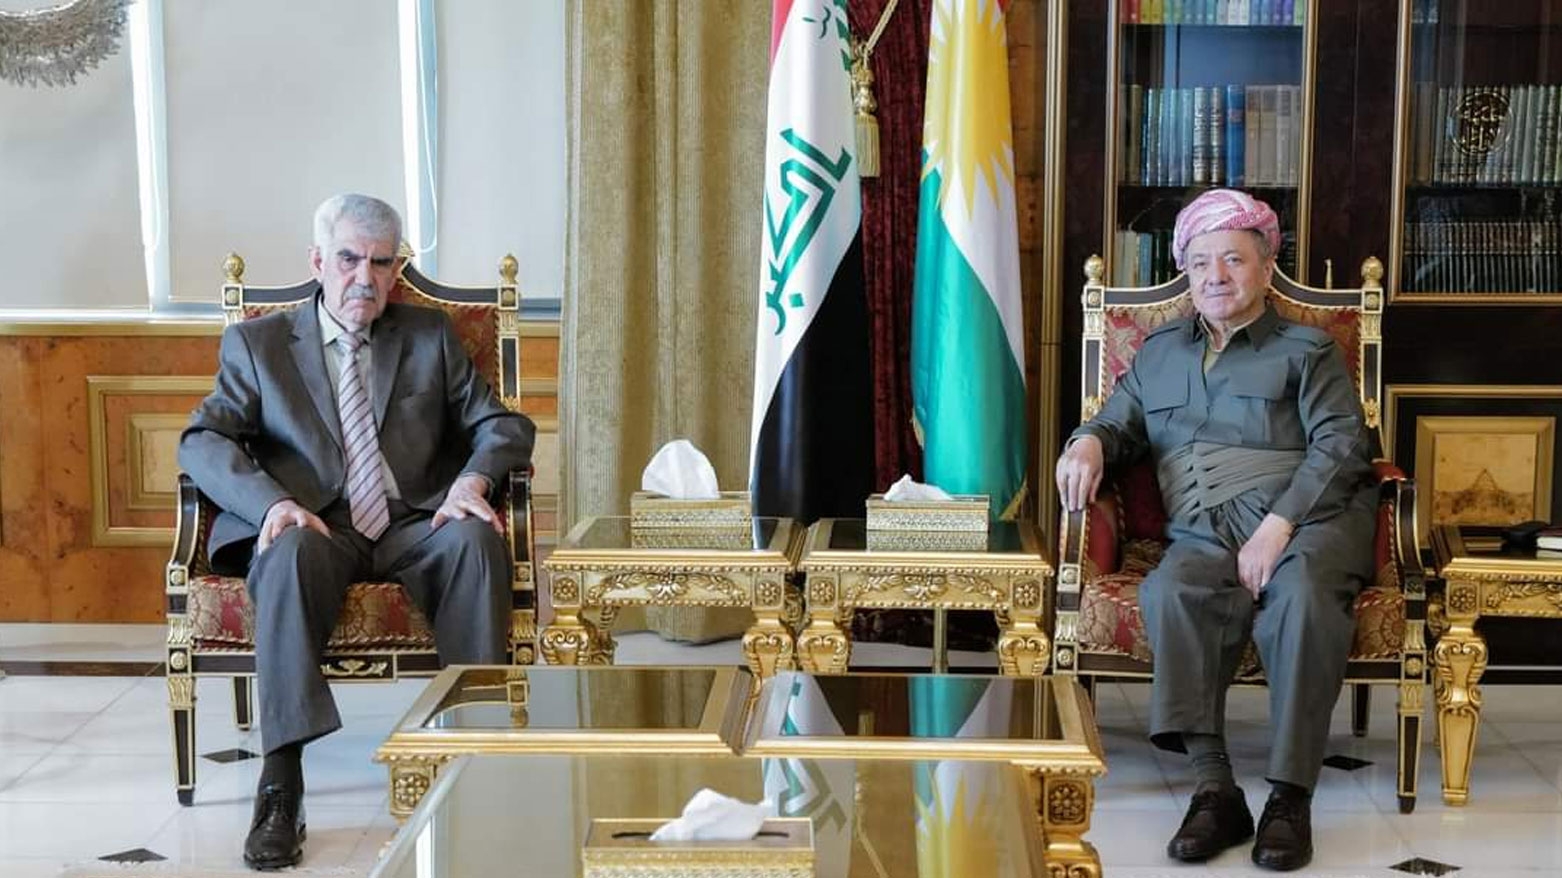 الرئيس بارزاني يستقبل لجنة الأقاليم والمحافظات في مجلس النواب العراقي